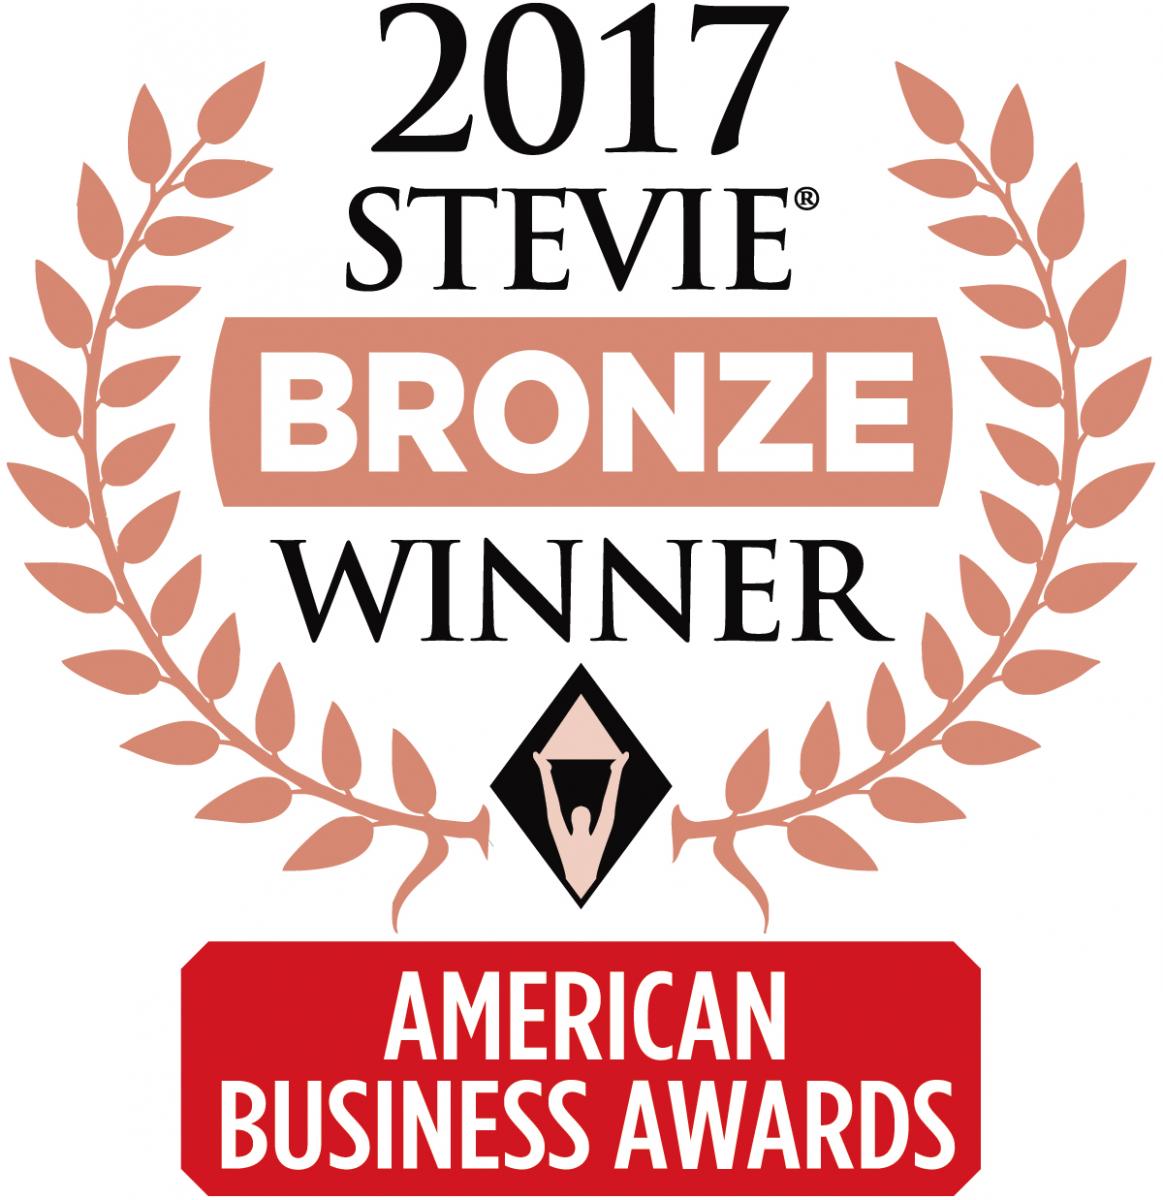 The Bronze Stevie Award